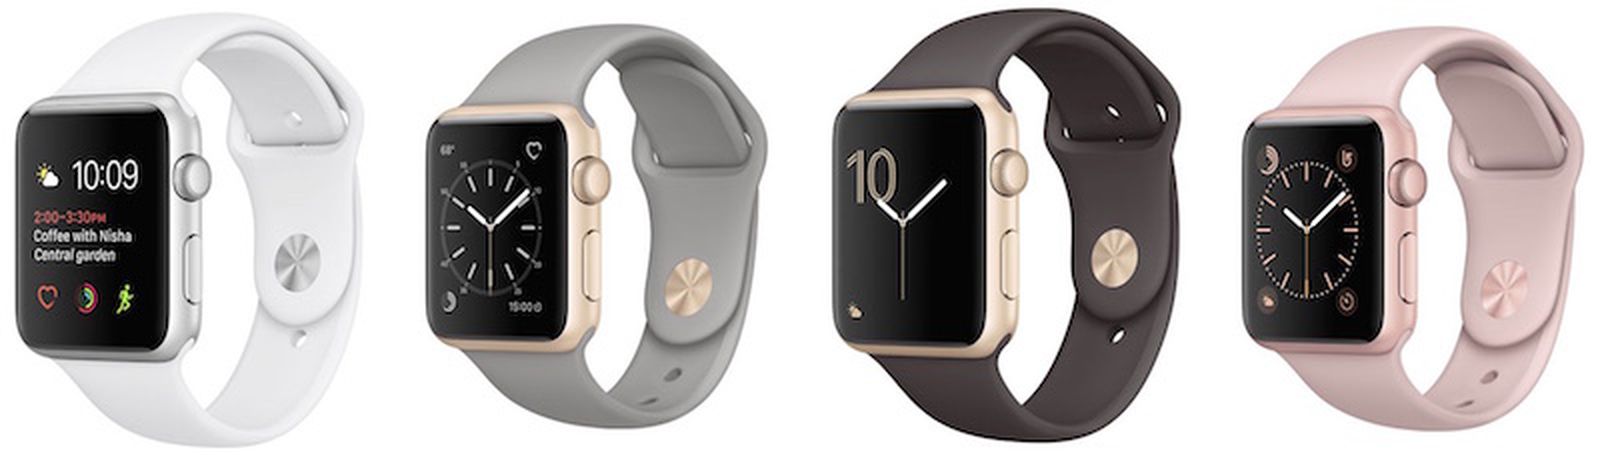 Target Discounting Series 1 Apple Watch Models by $70 - MacRumors